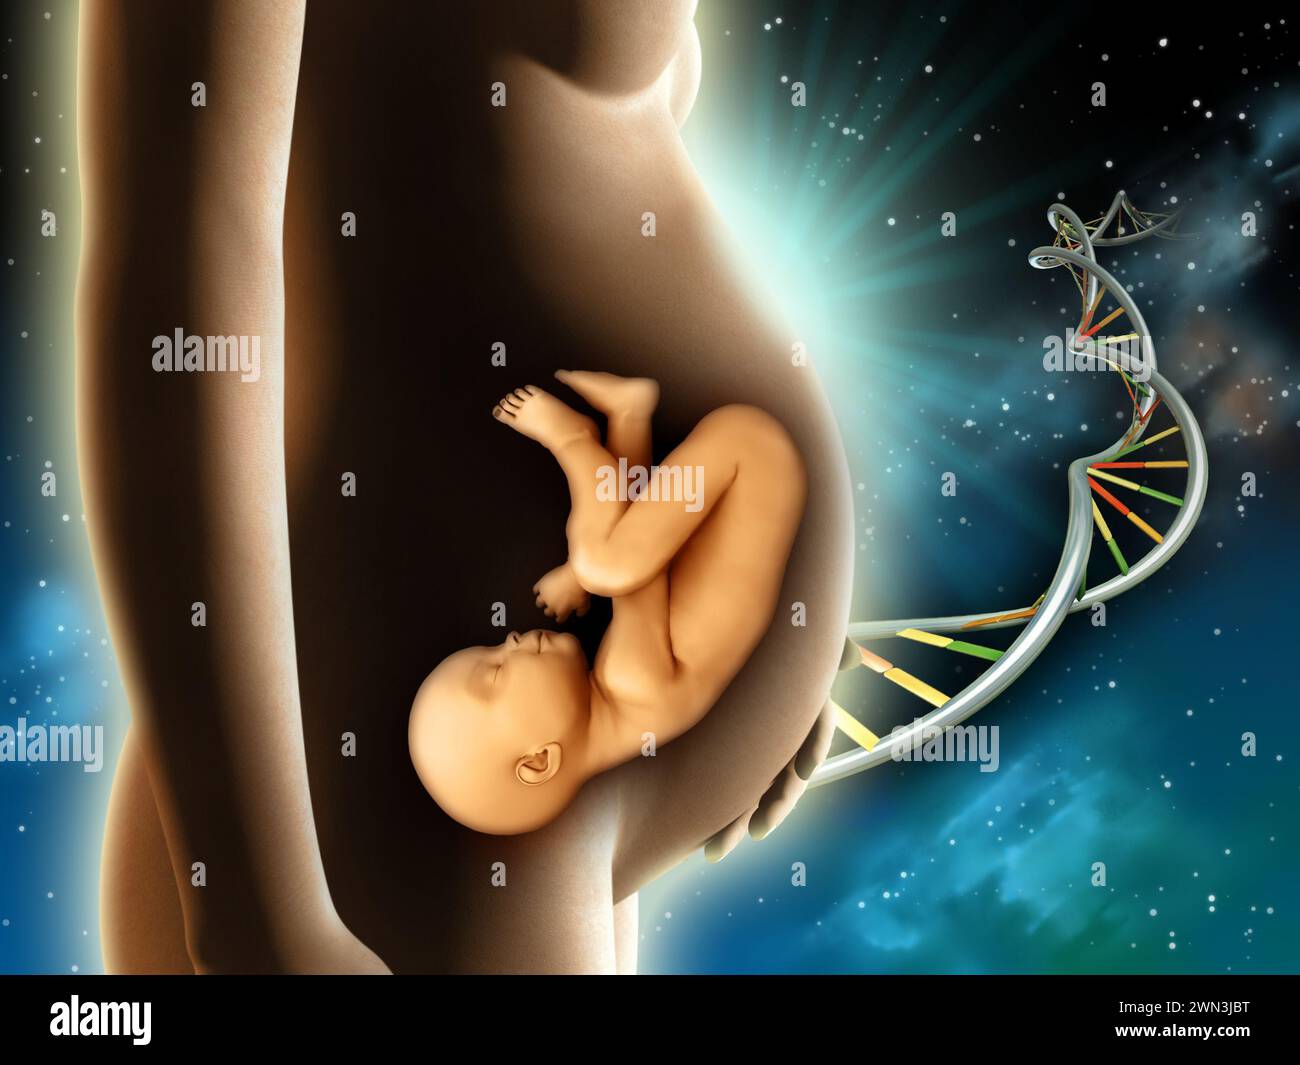 Die Baustoffe für ein neues Leben kamen aus dem Weltraum. Eine Frau, die einen Fötus in ihrem Gebärmutterleib trägt. Digitale Illustration. Stockfoto